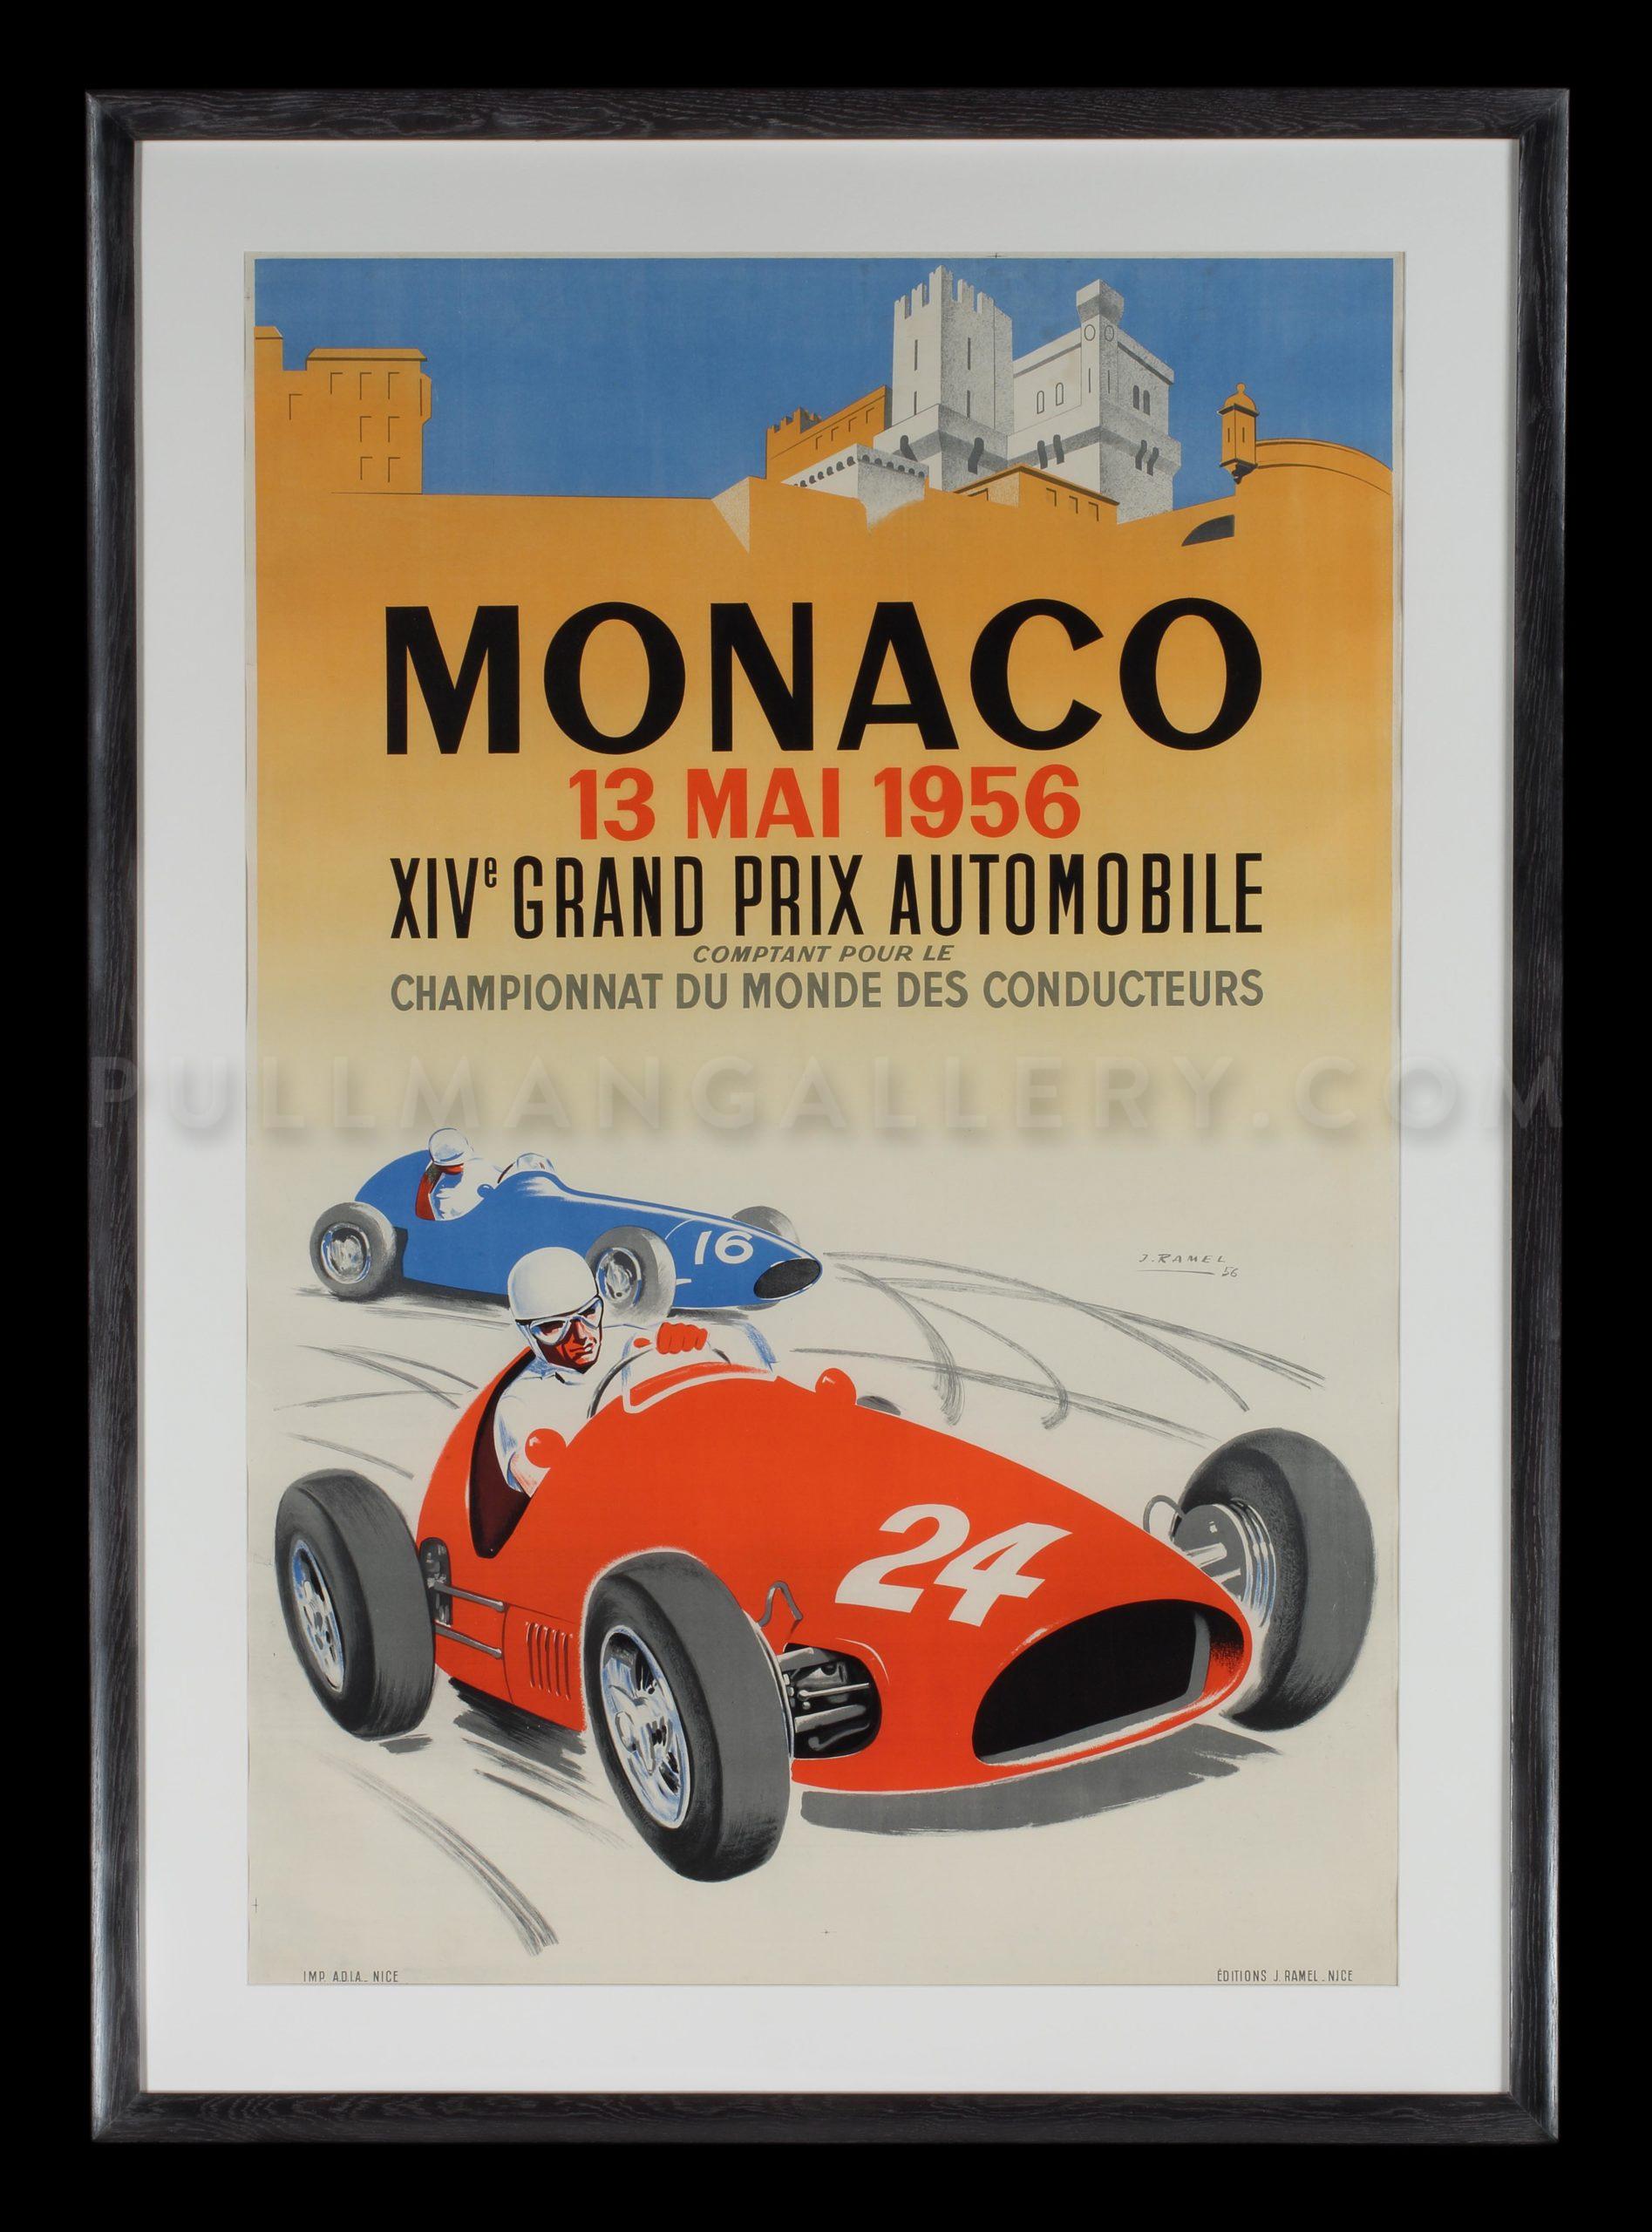 Monaco Grand Prix, 1956' – Pullman Gallery